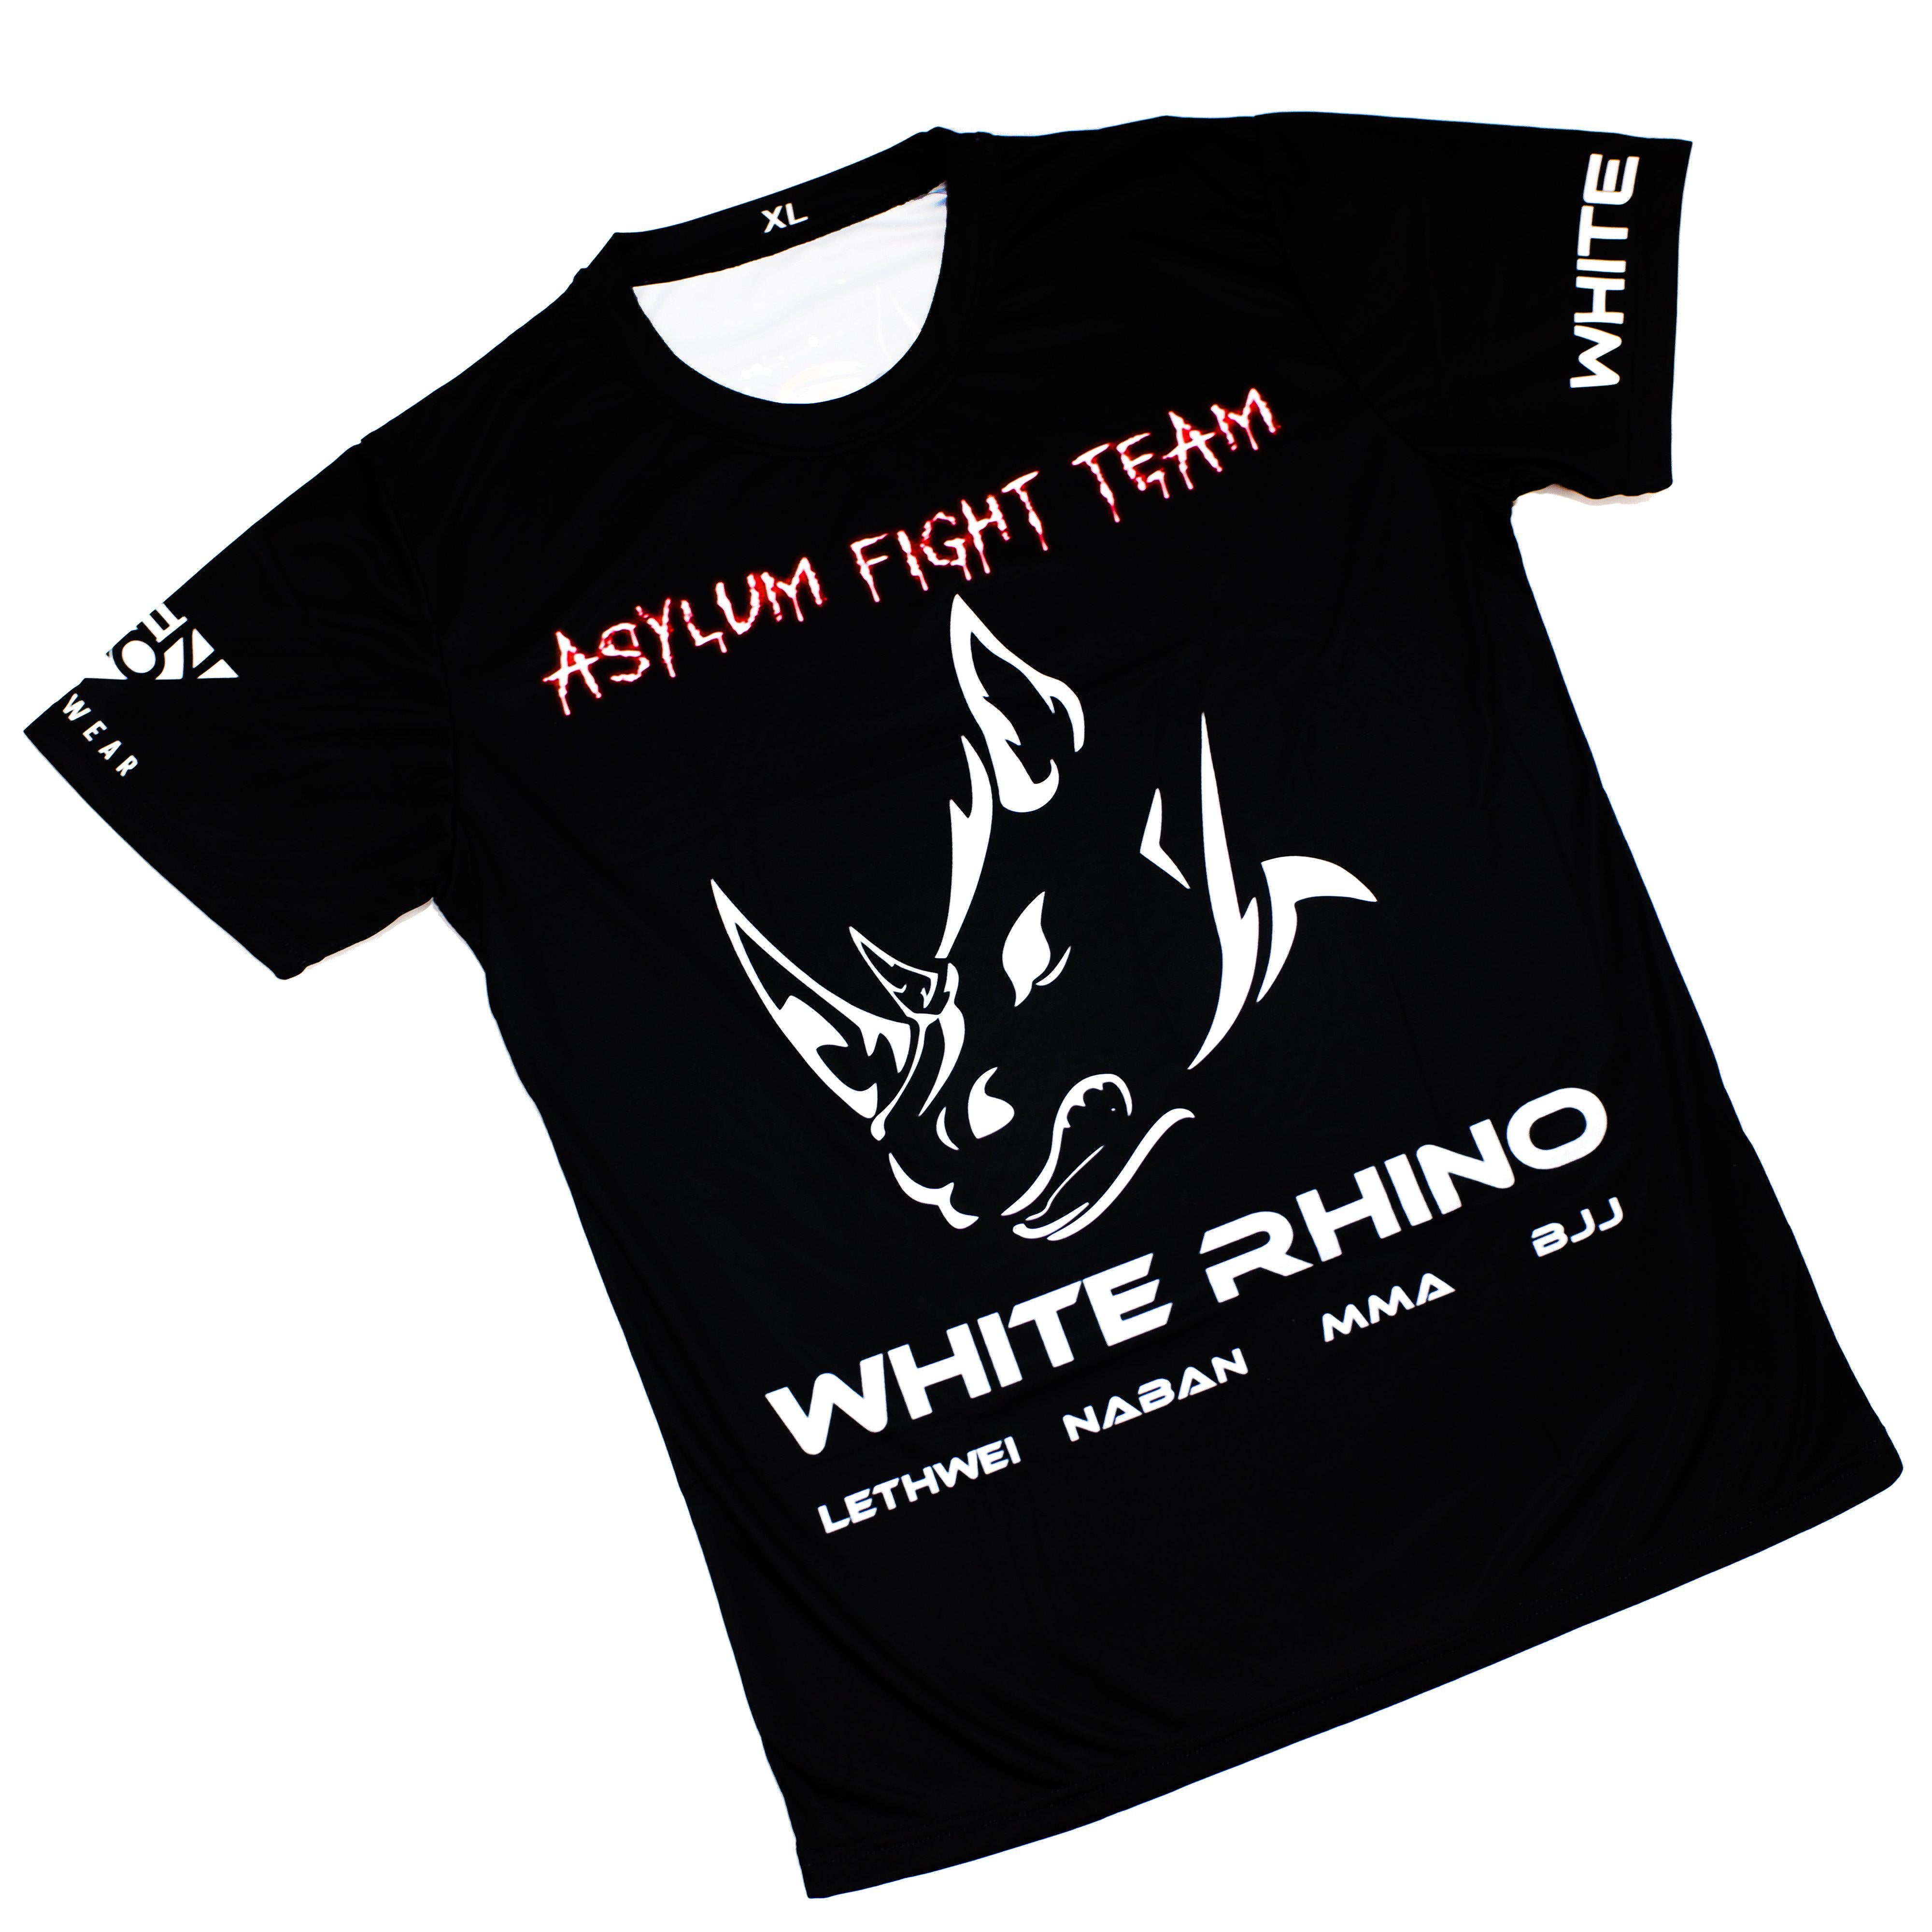 Asylum Fight Team - White Rhino BJJ Rhino Jersey Tee - Zenko Fightwear